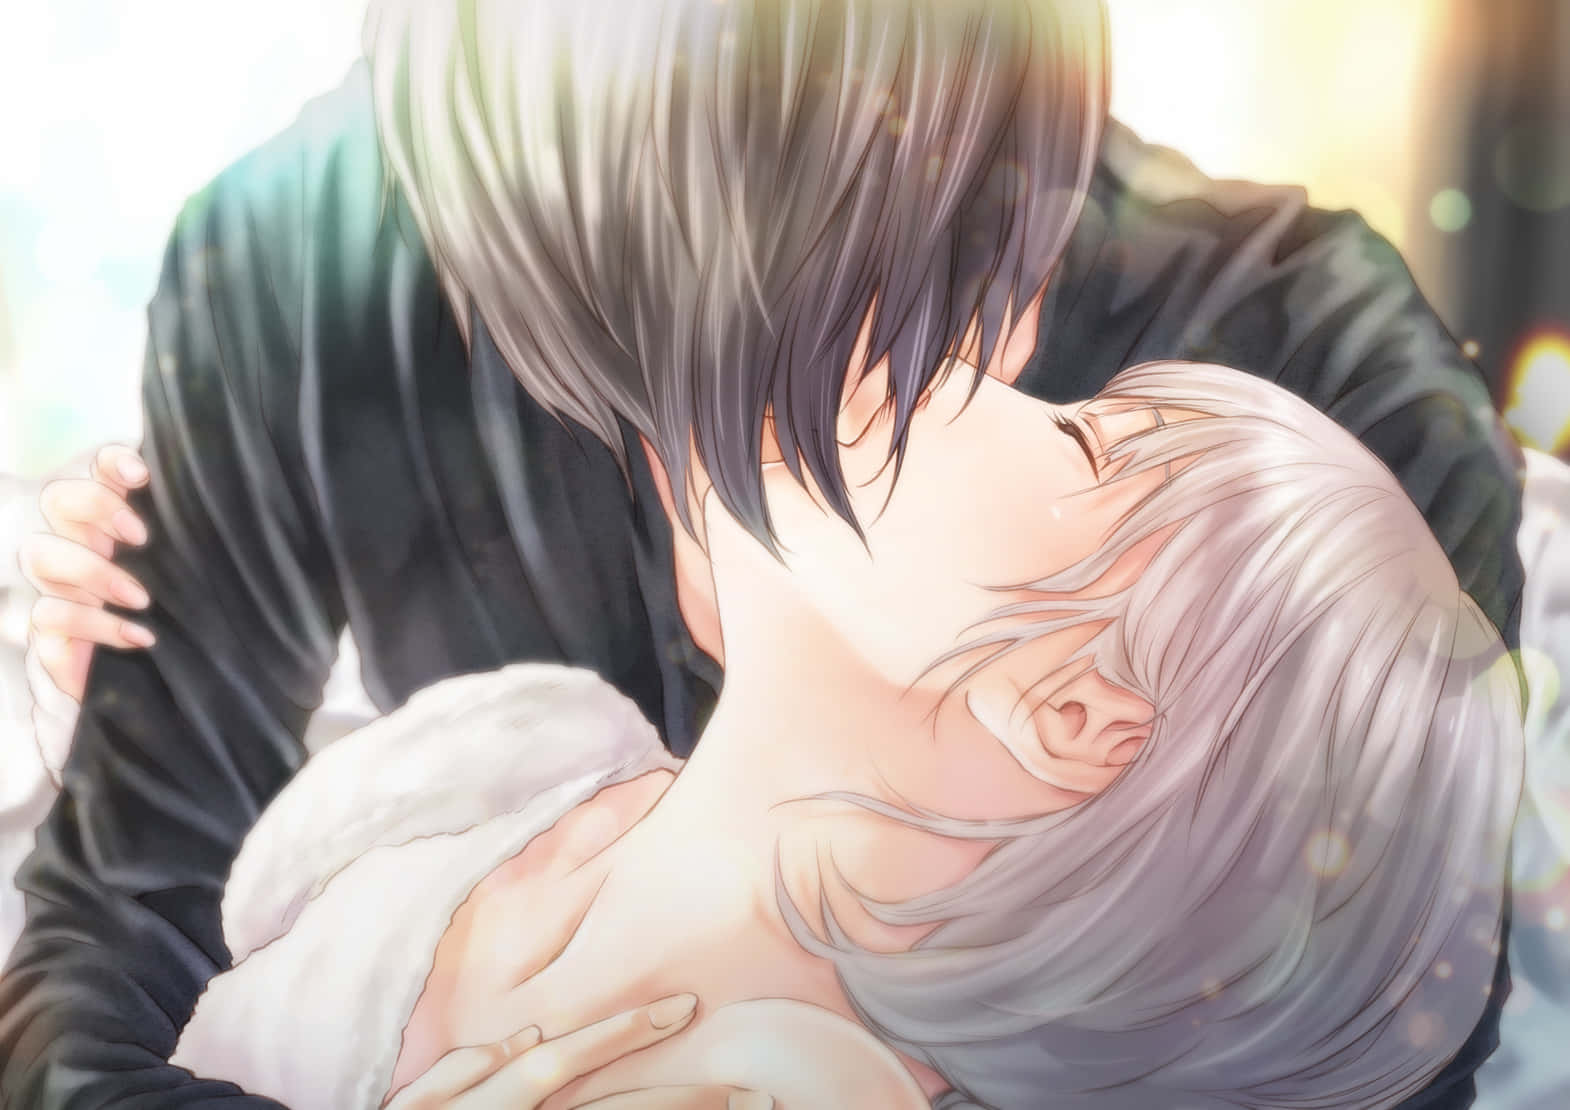 Intimesliebespaar Aus Anime Küsst Sich. Wallpaper